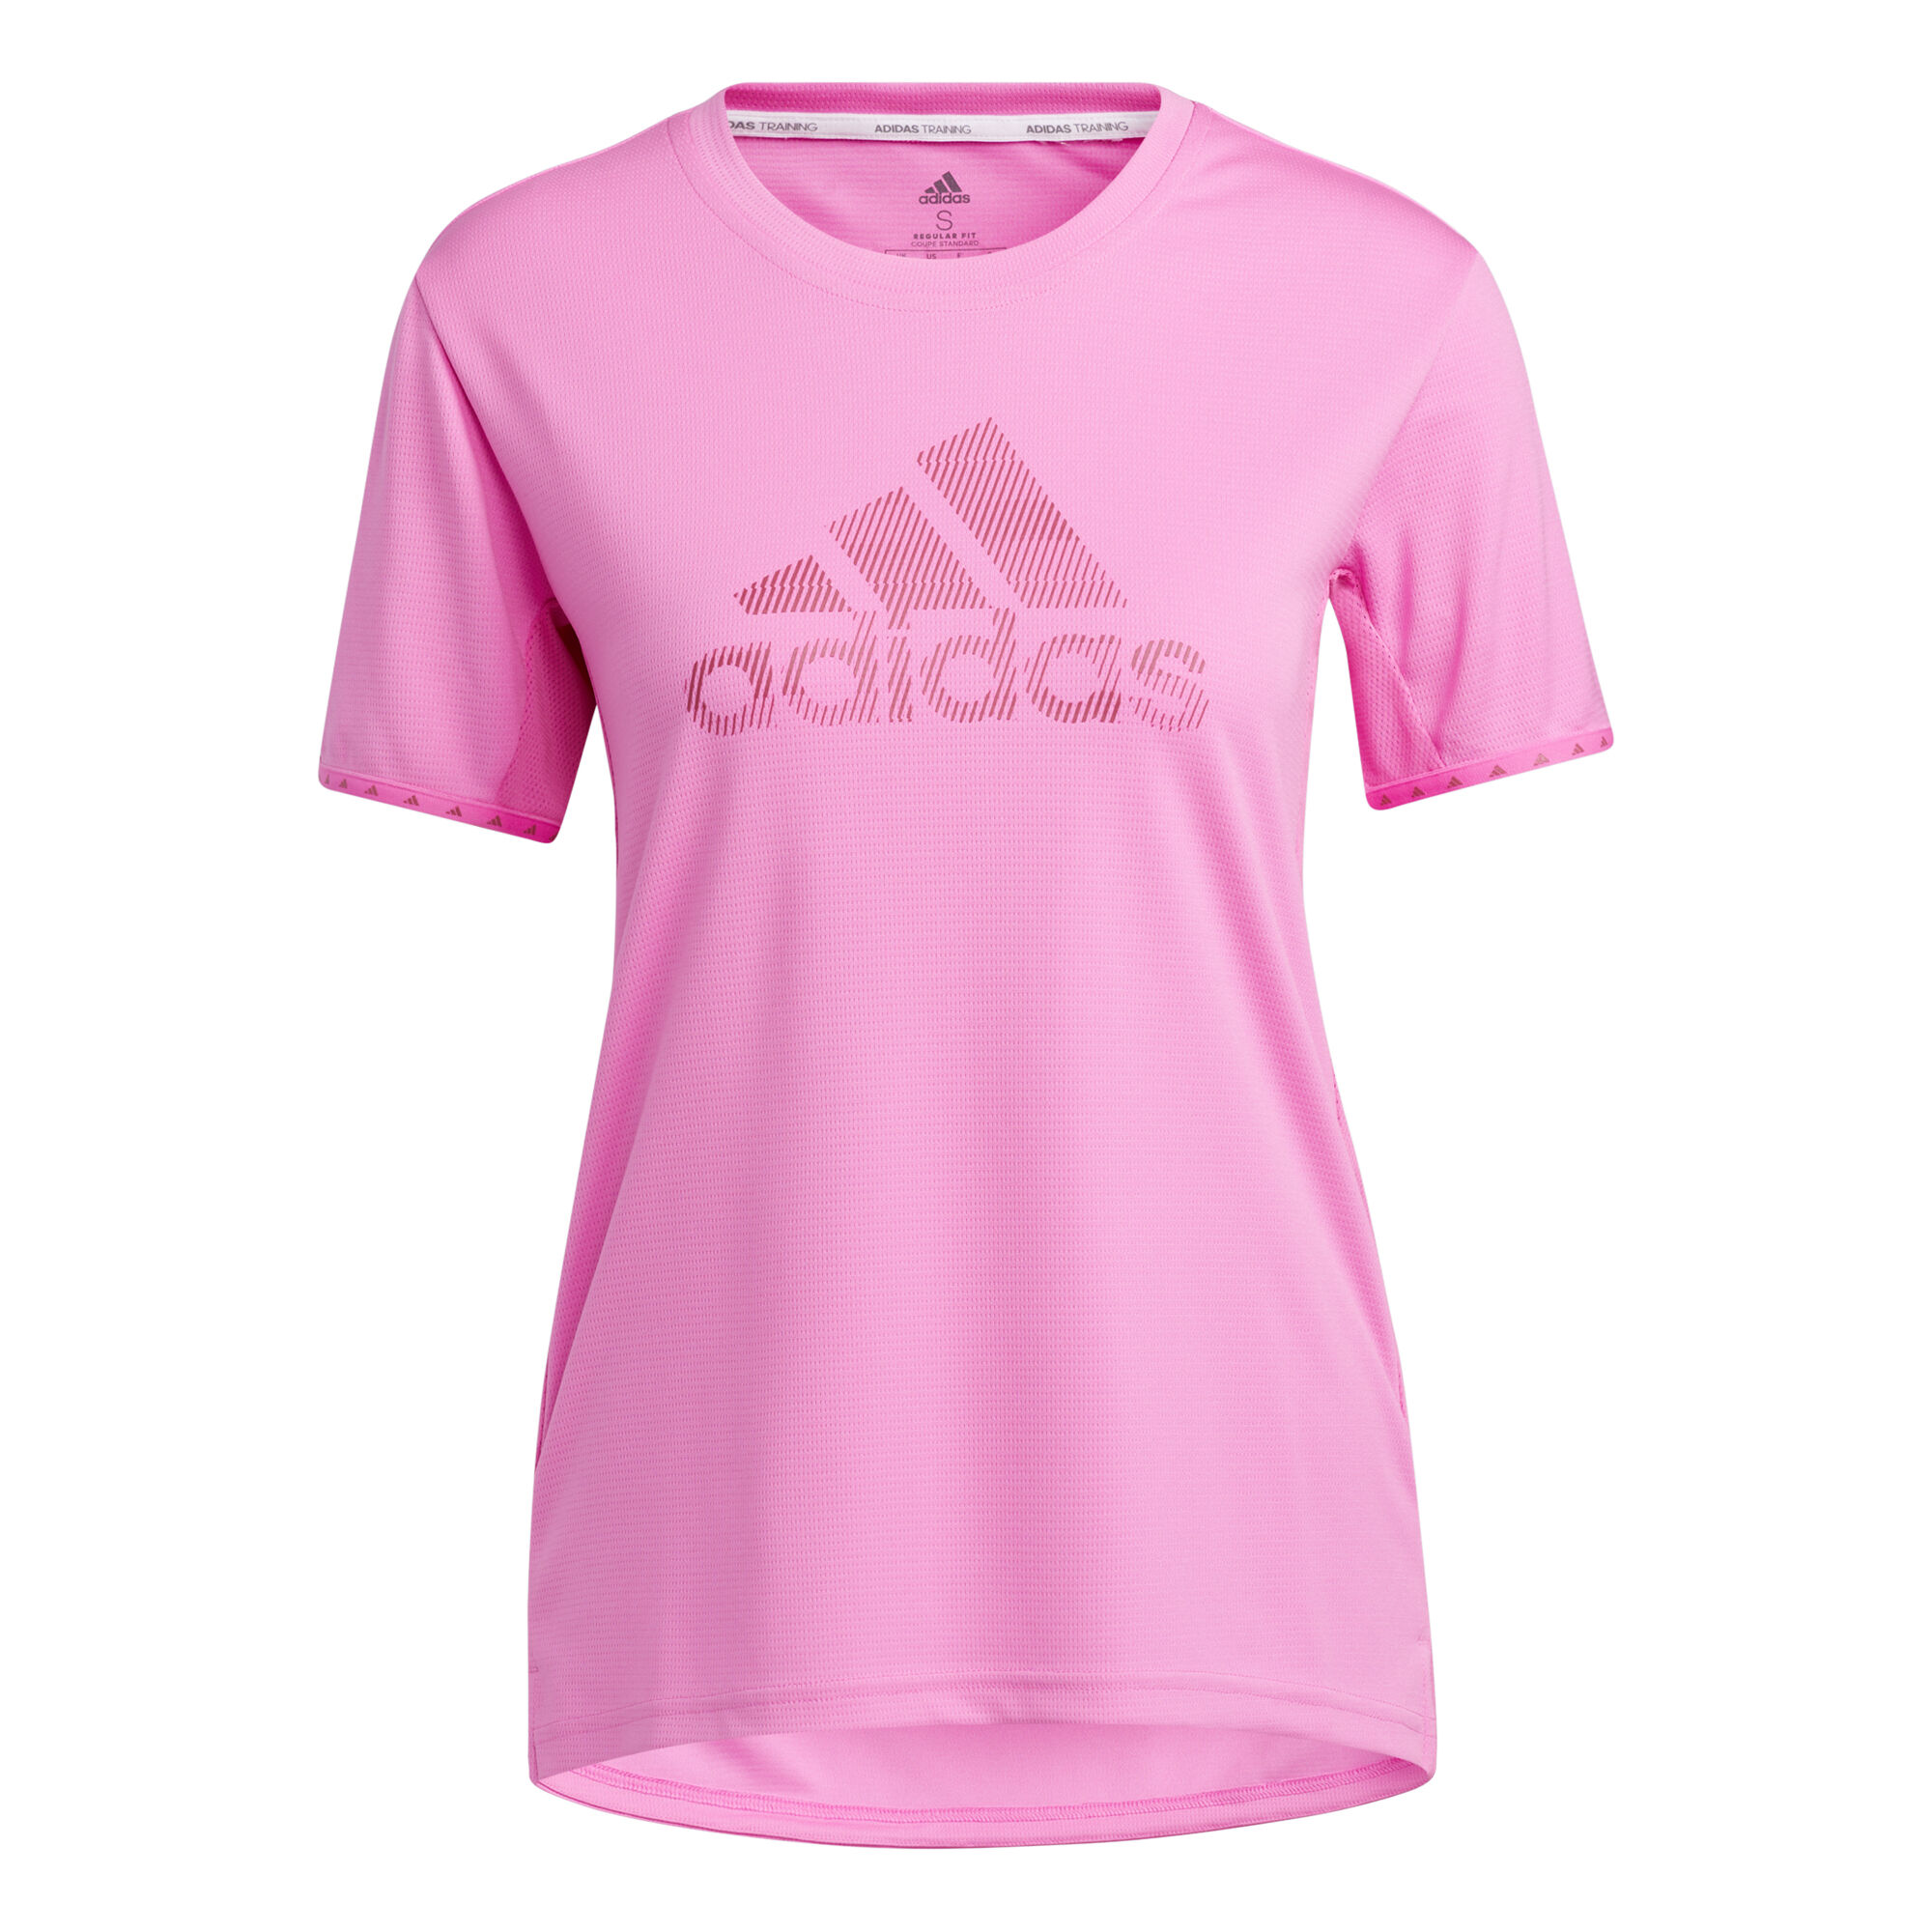 Sale -40% Win 2.0 T-Shirt adidas Win 2.0 T-Shirt Women - Pink € 29 